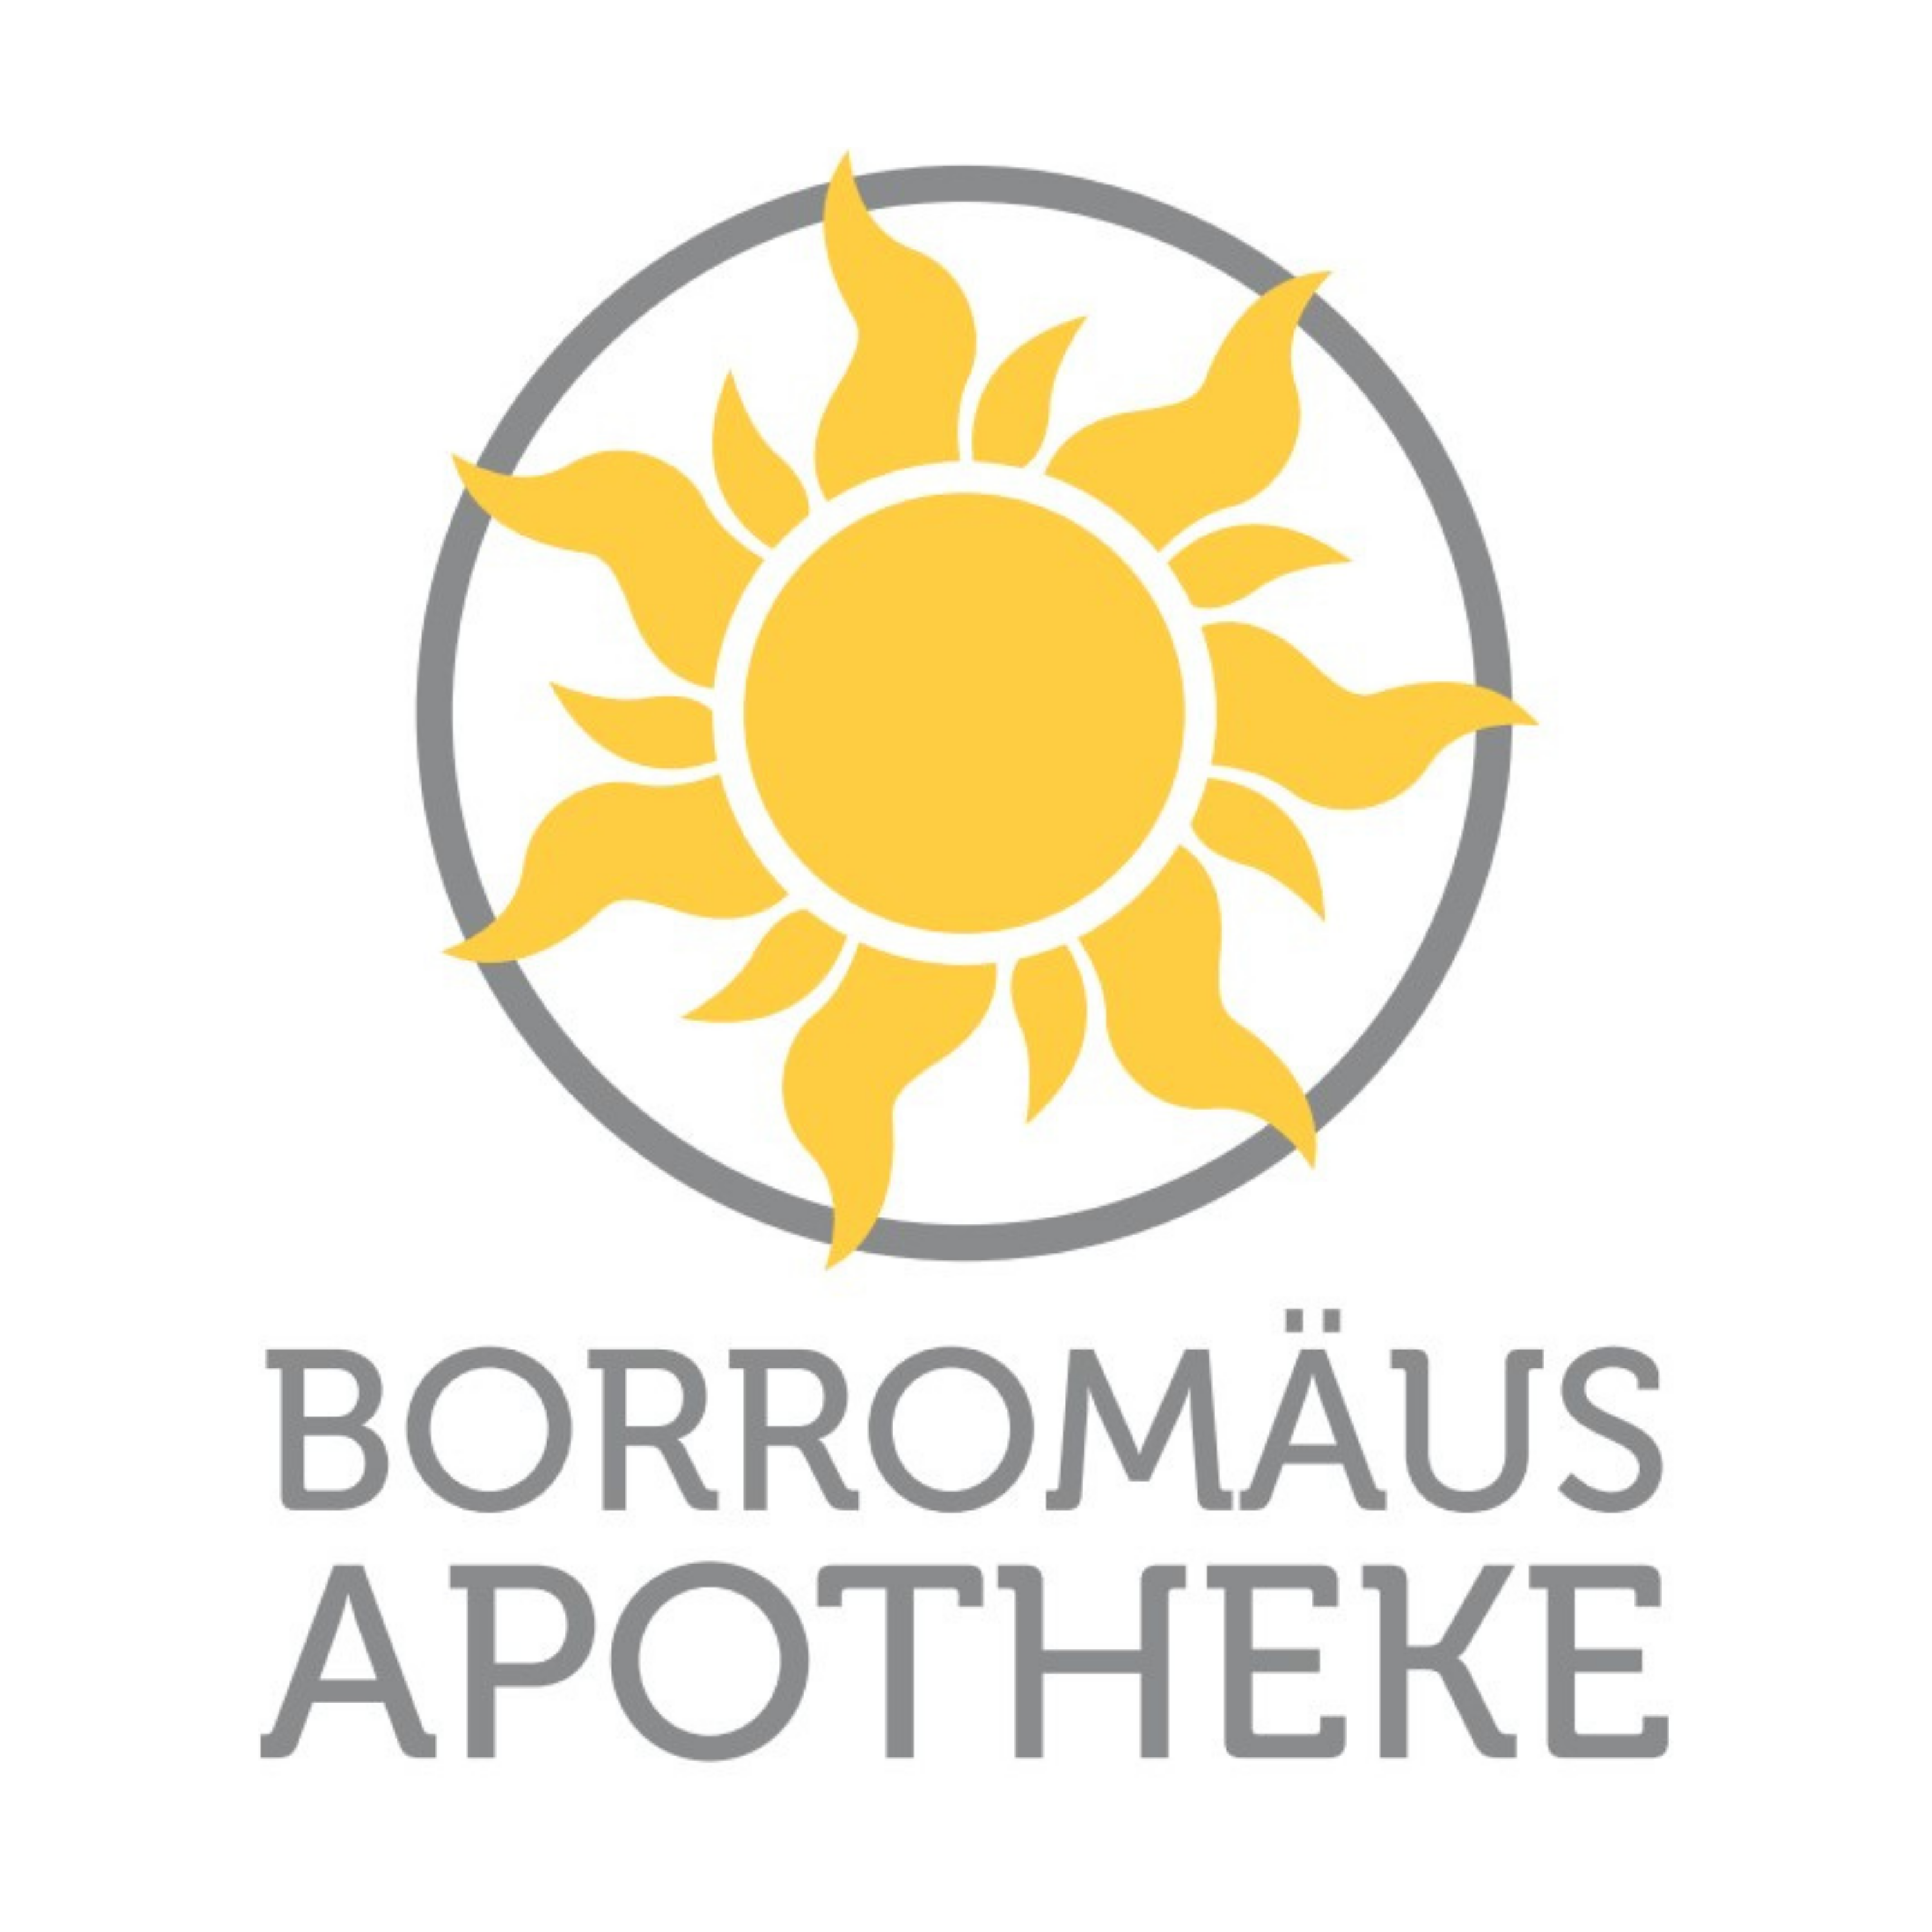 Borromäus Apotheke Logo